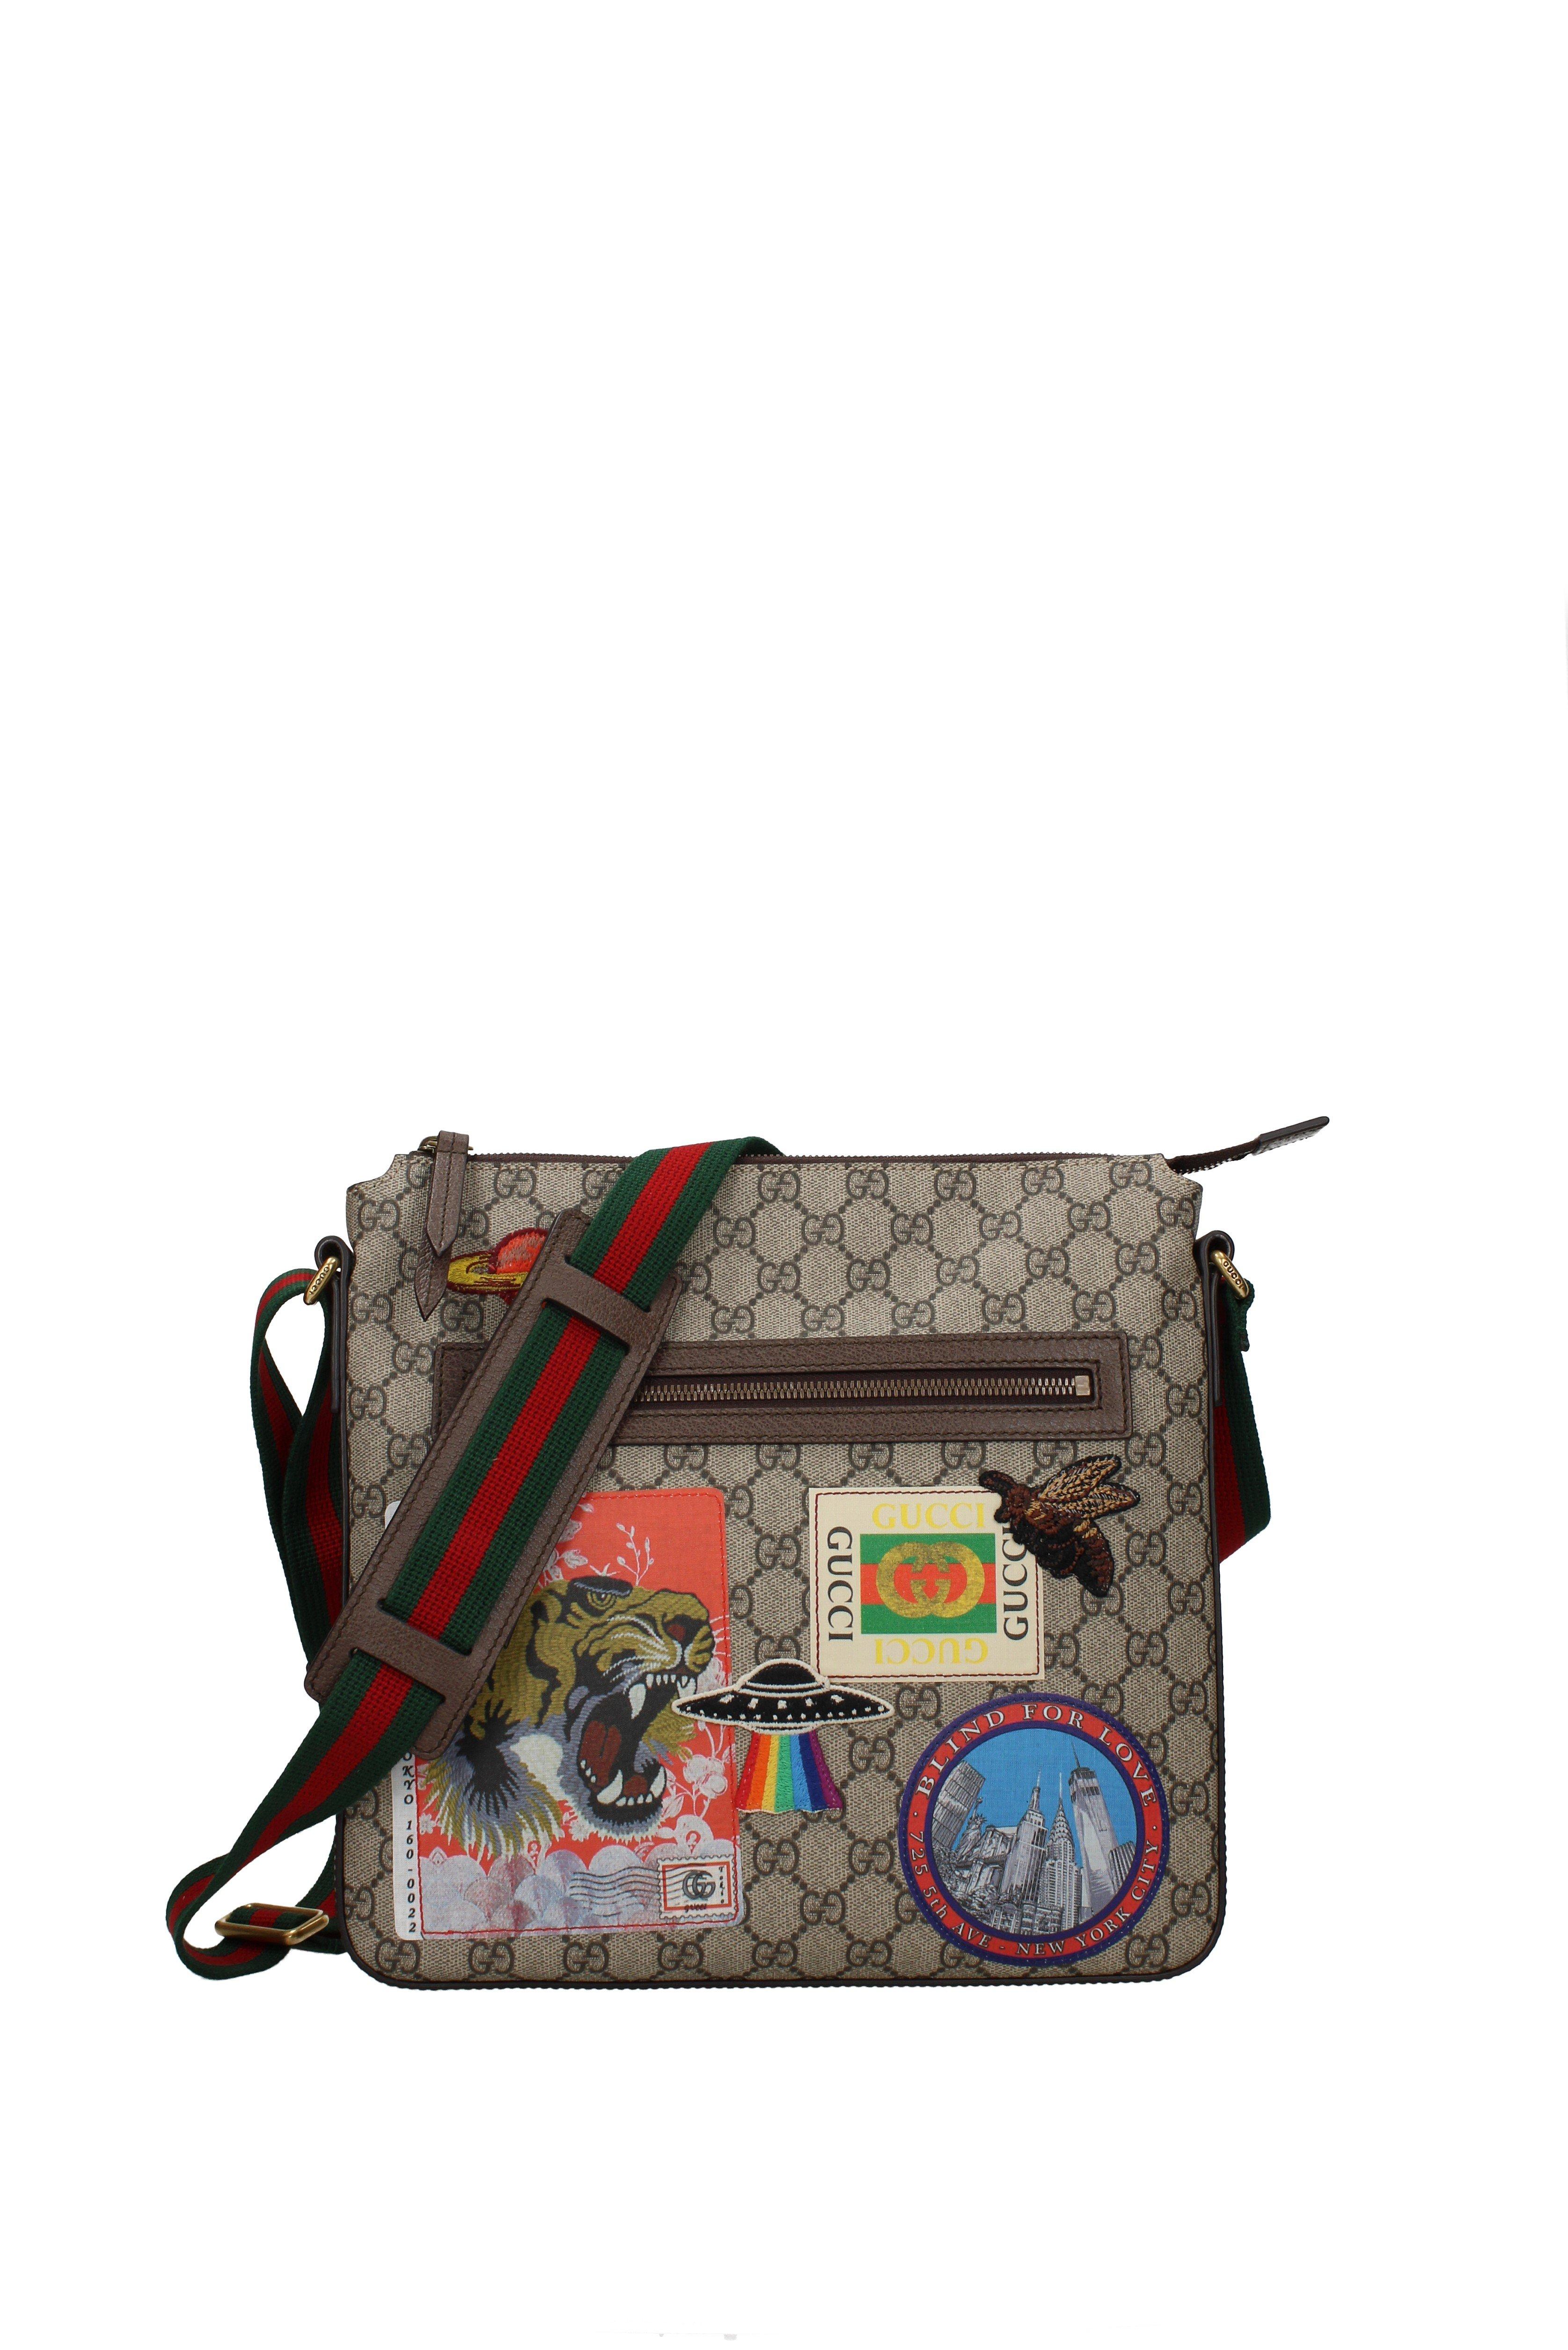 Gucci Supreme Crossbody Bag Men's | NAR Media Kit